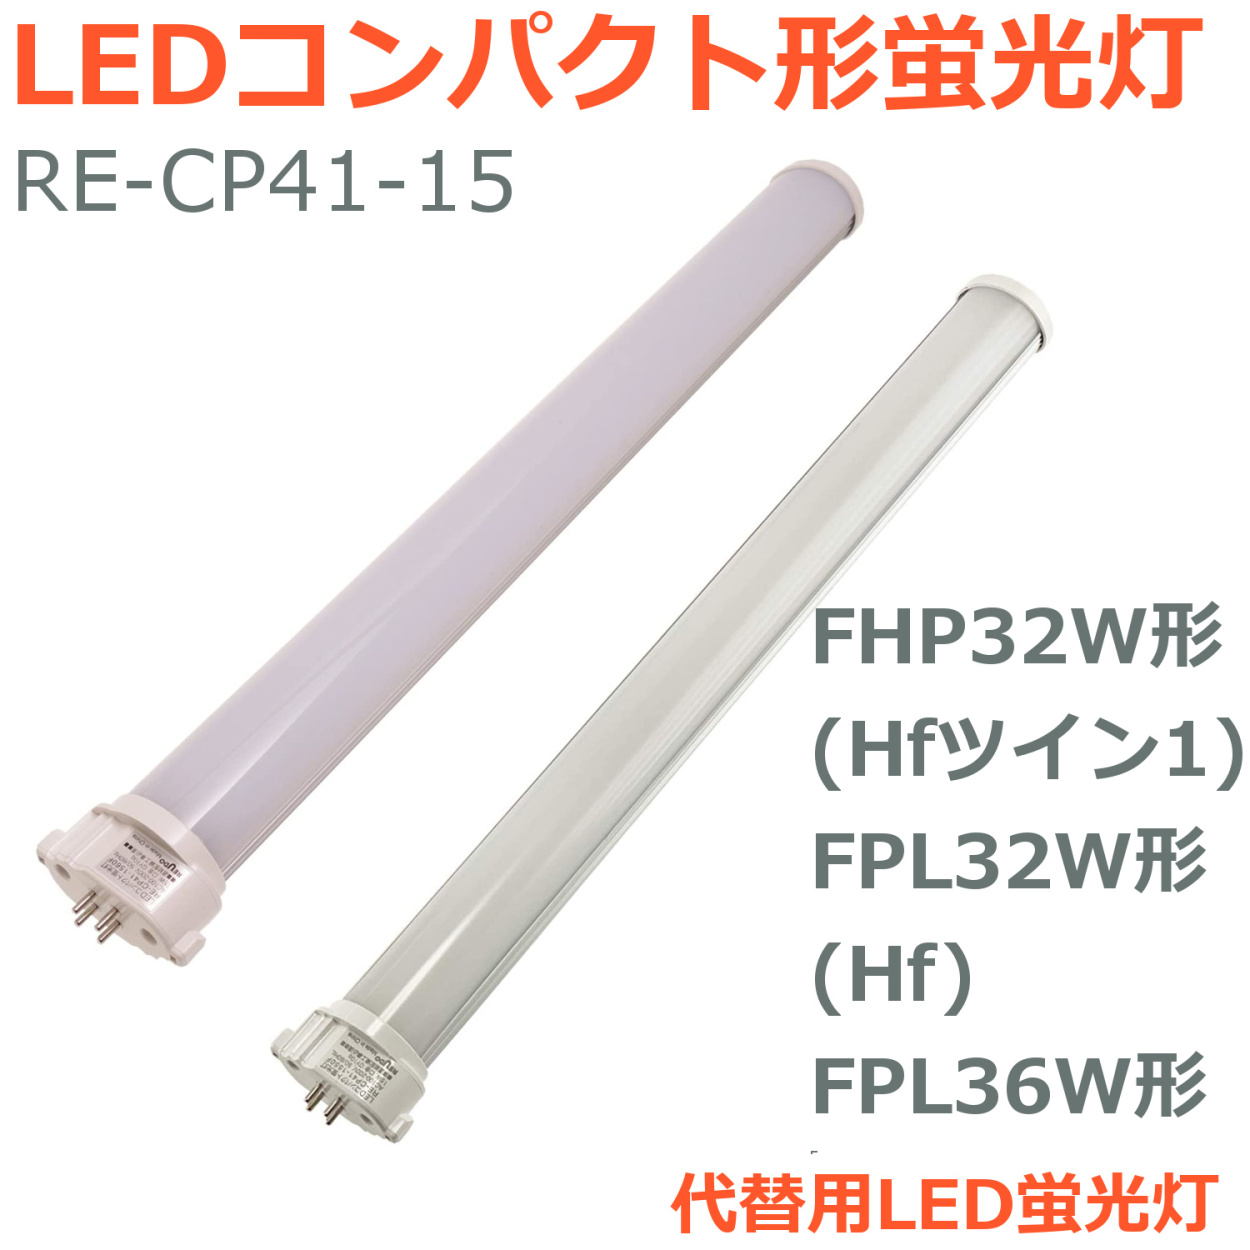 LEDコンパクト形蛍光灯 FHP32W形 Hfツイン1 FPL32W形 Hf FPL36W形 代替